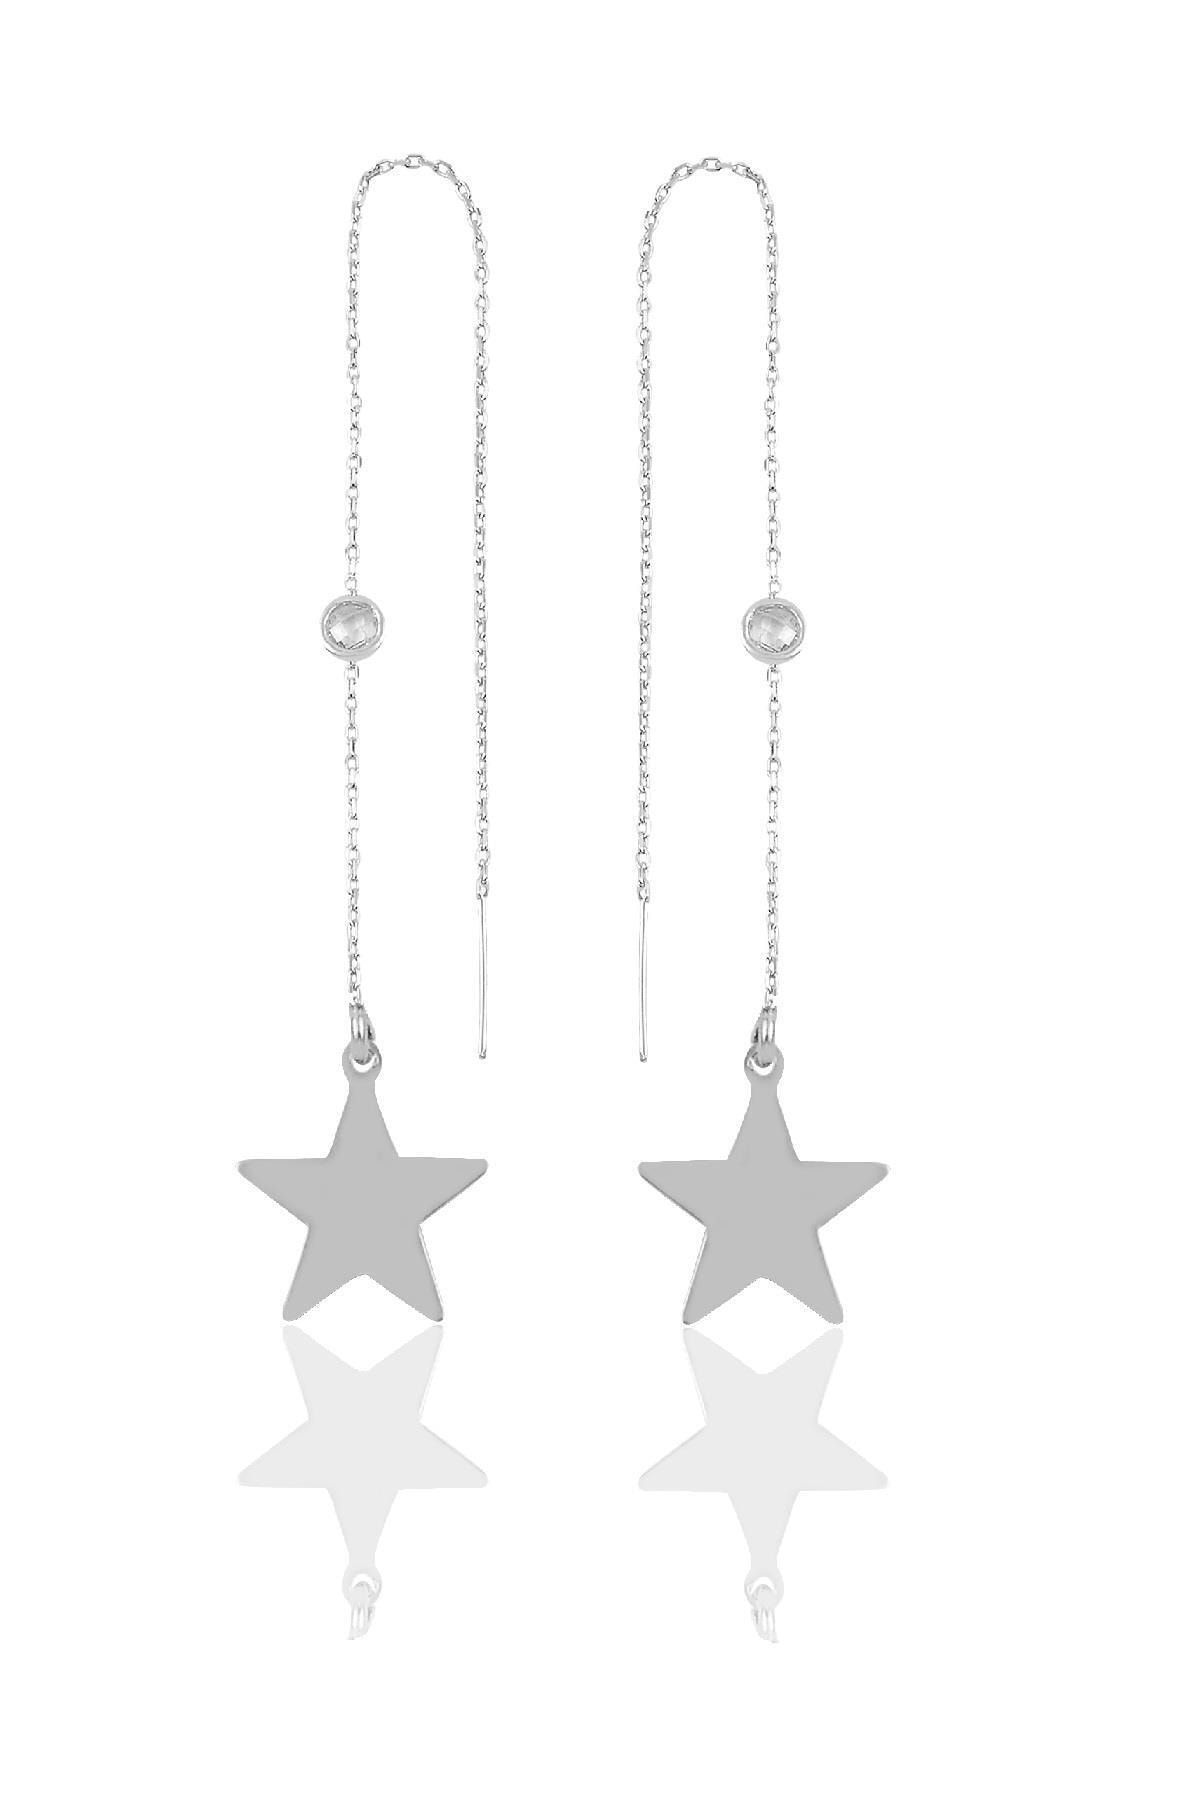 Söğütlü Silver Gümüş Taşlı Zincirli Küpe Yıldız Modeli